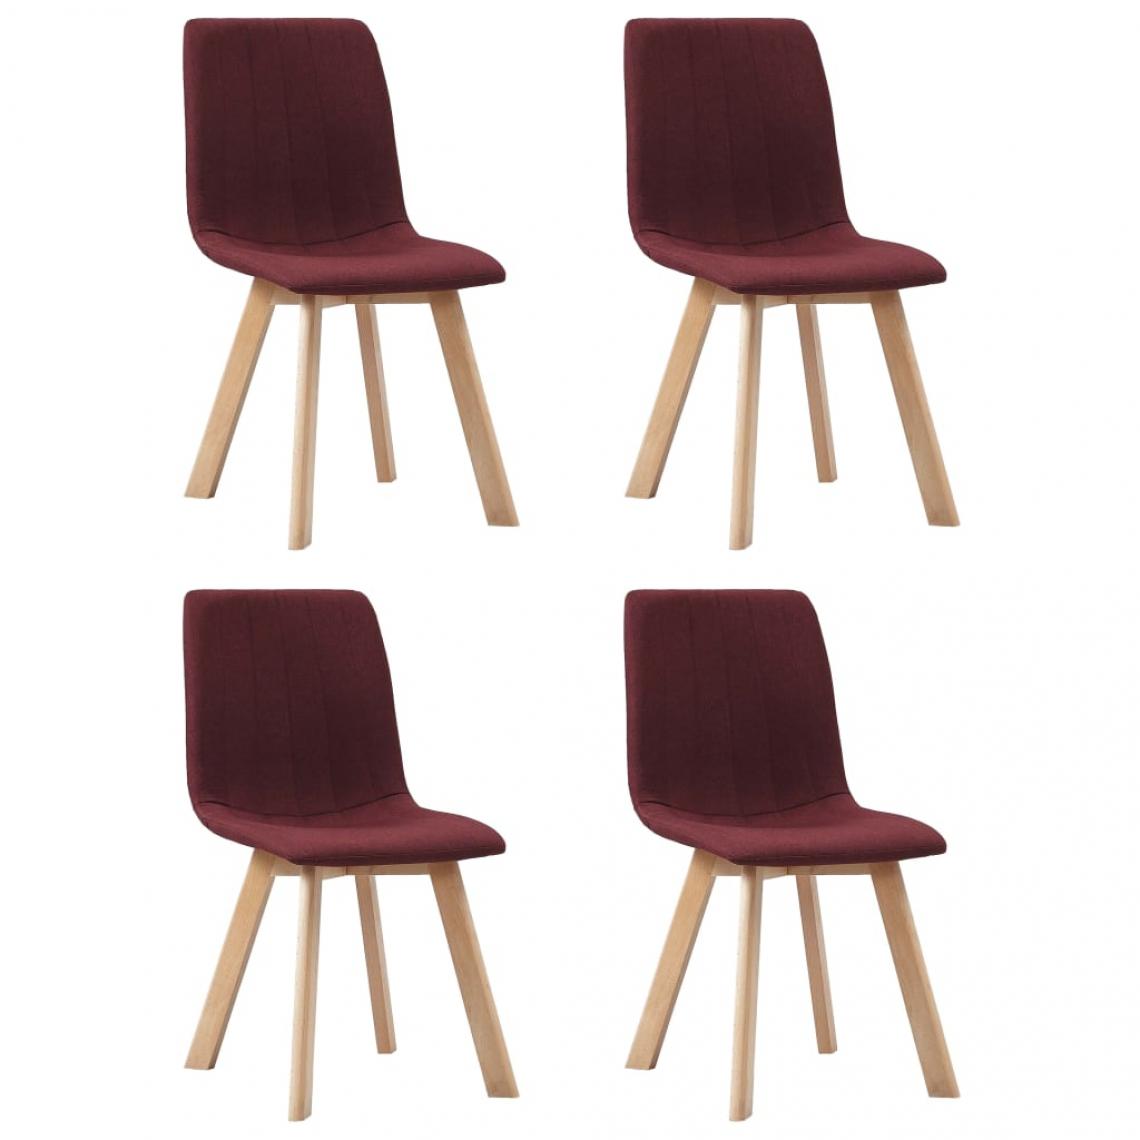 Decoshop26 - Lot de 4 chaises de salle à manger cuisine design moderne tissu rouge bordeaux CDS021937 - Chaises